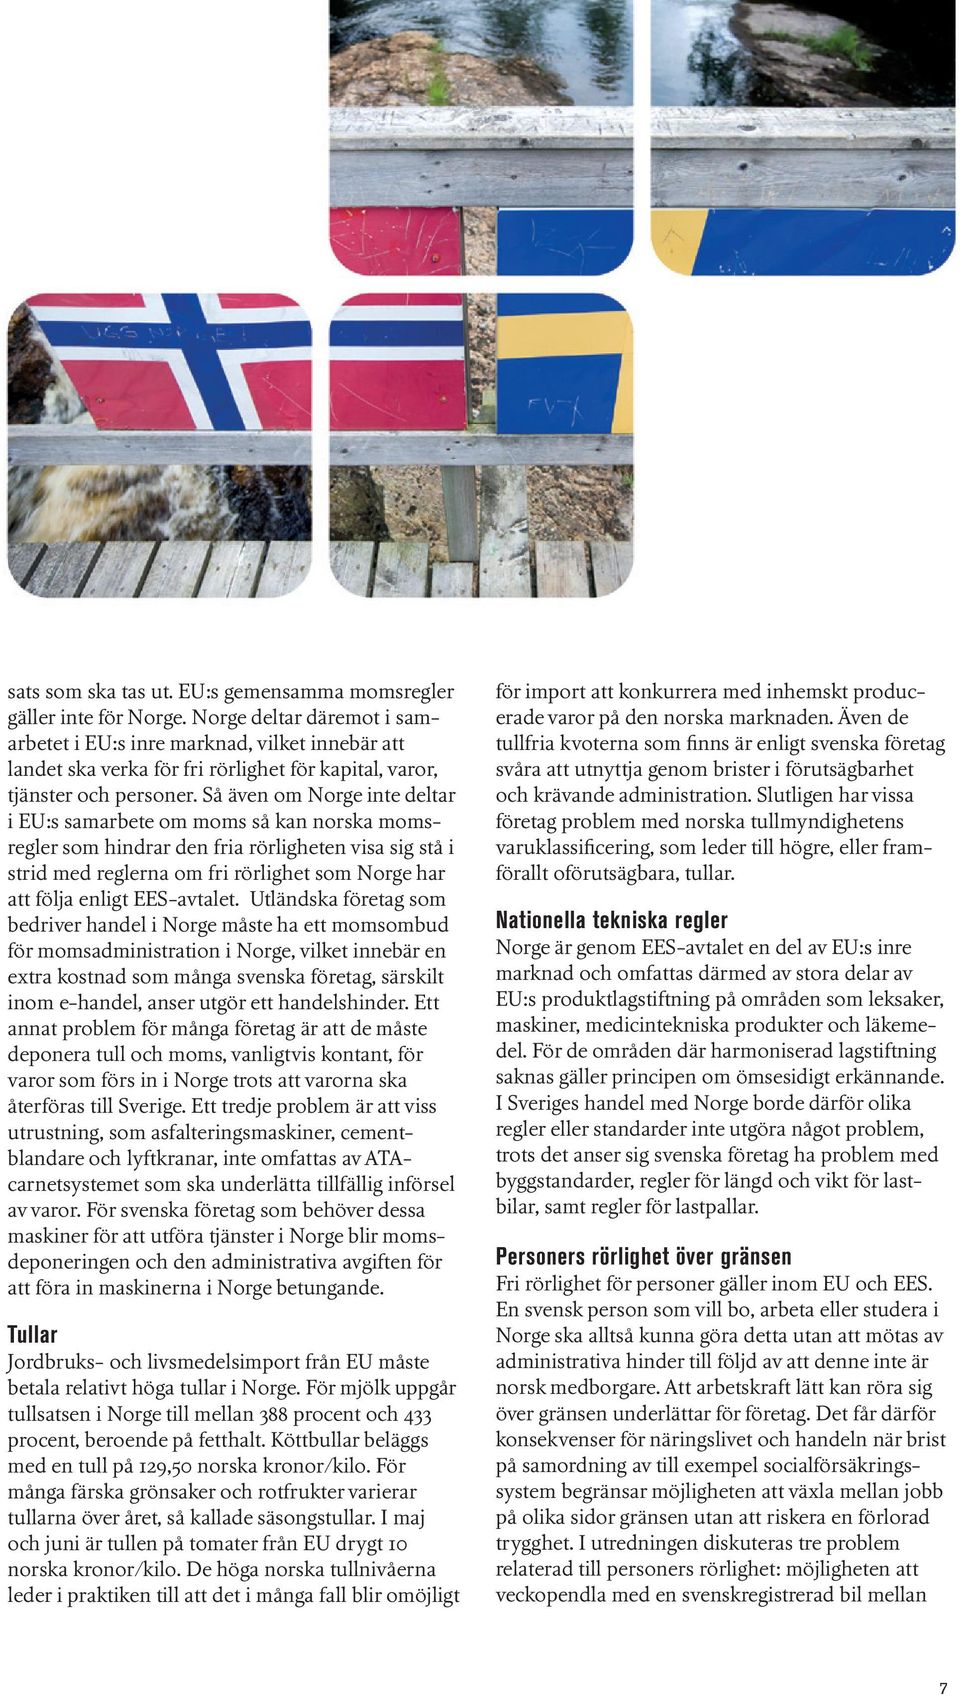 Så även om Norge inte deltar i EU:s samarbete om moms så kan norska momsregler som hindrar den fria rörligheten visa sig stå i strid med reglerna om fri rörlighet som Norge har att följa enligt